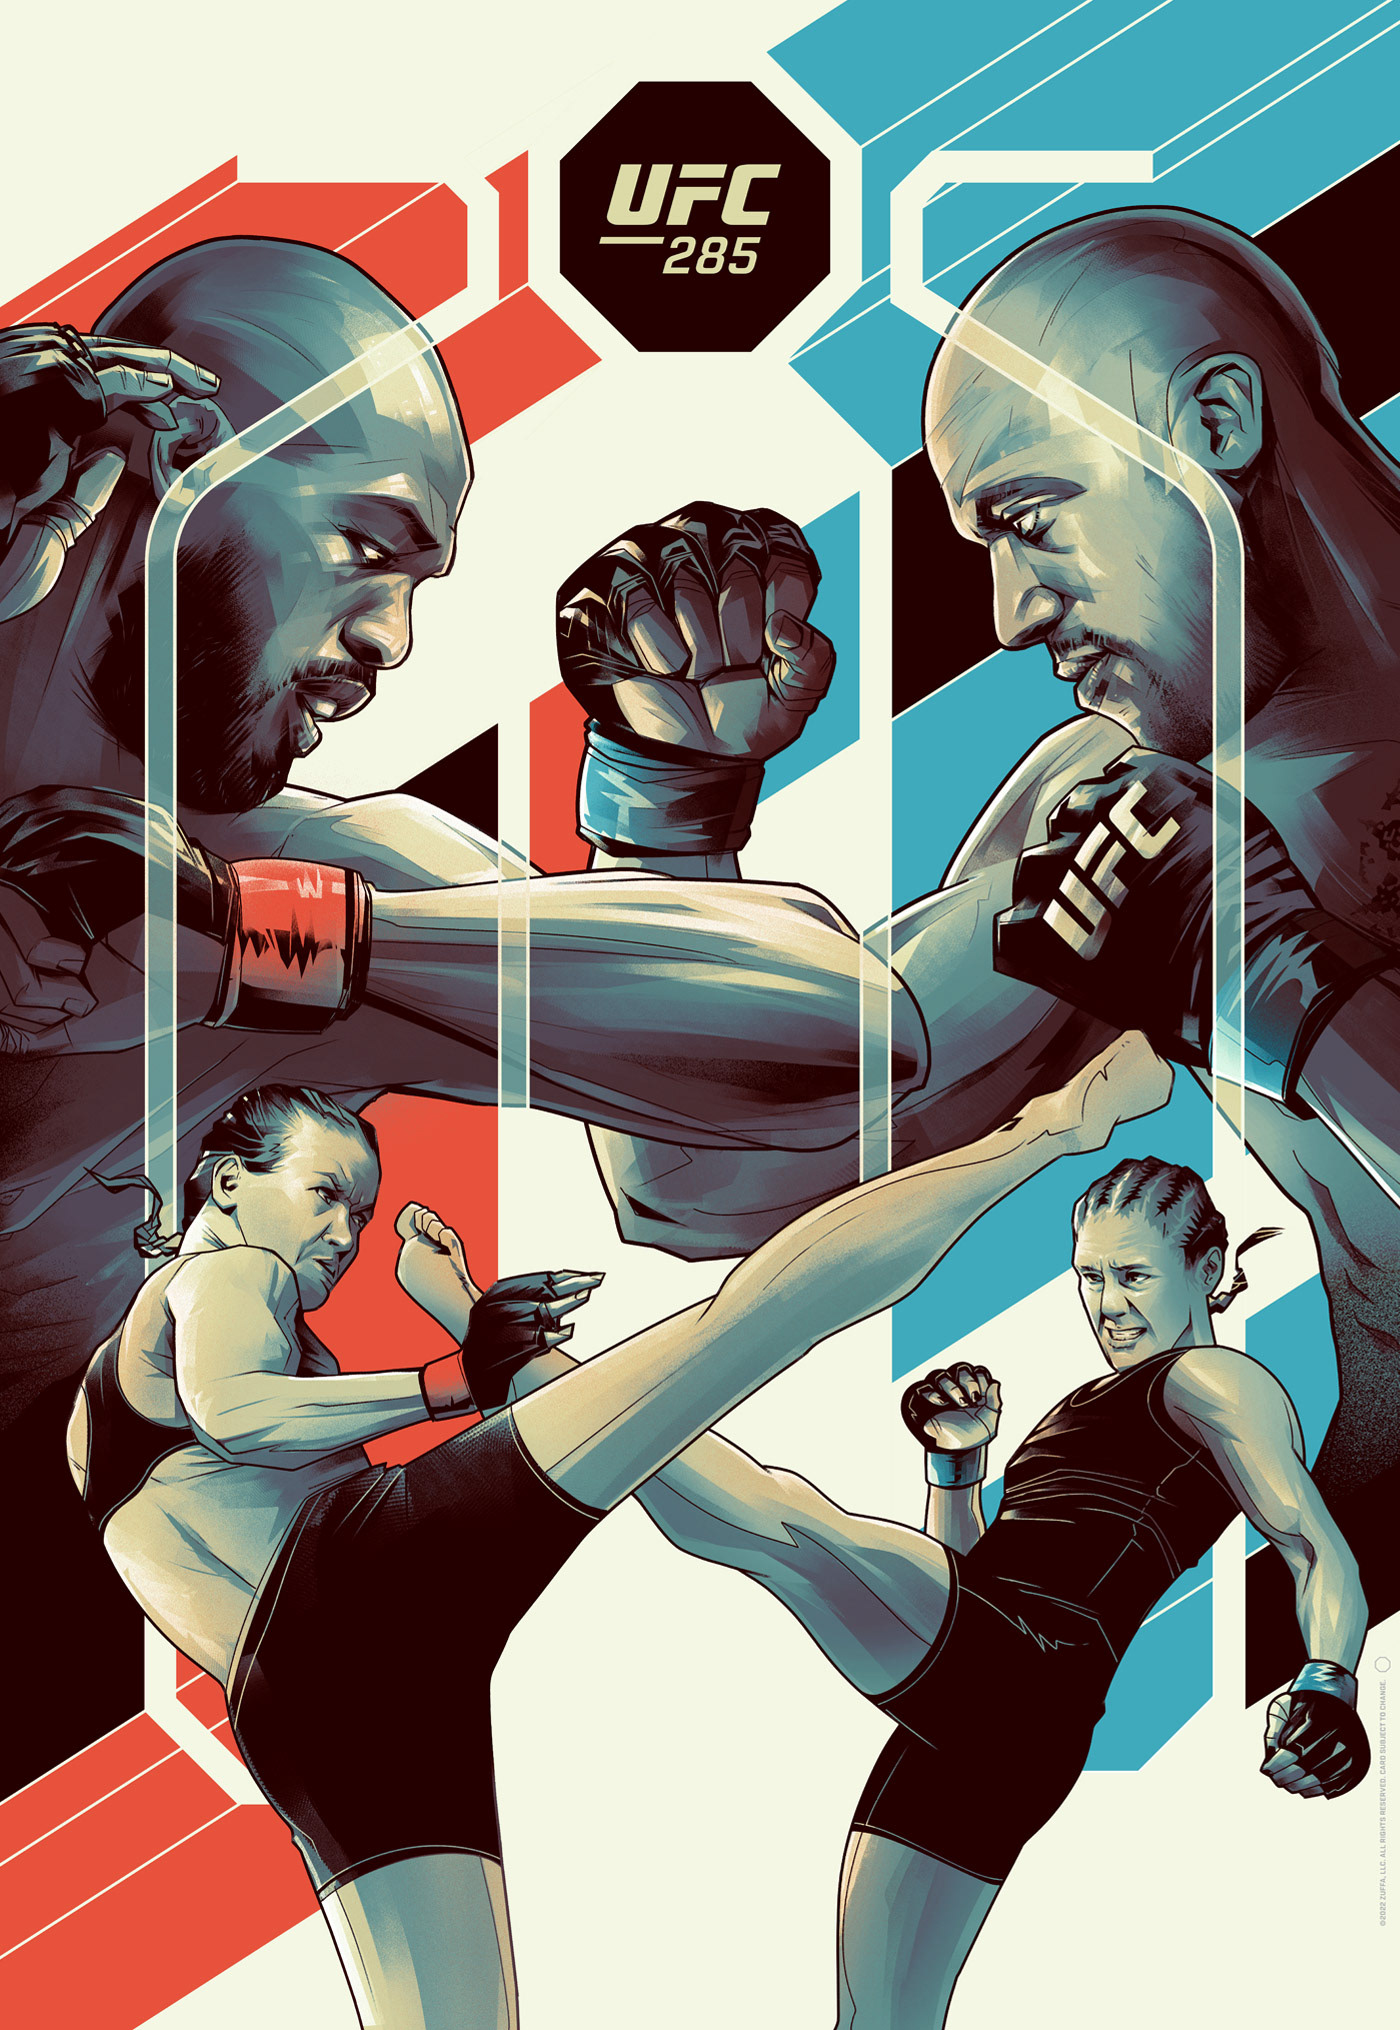 poster sports poster UFC MMA UFC ART fight poster jonjones ufc285 poster art Poster Design